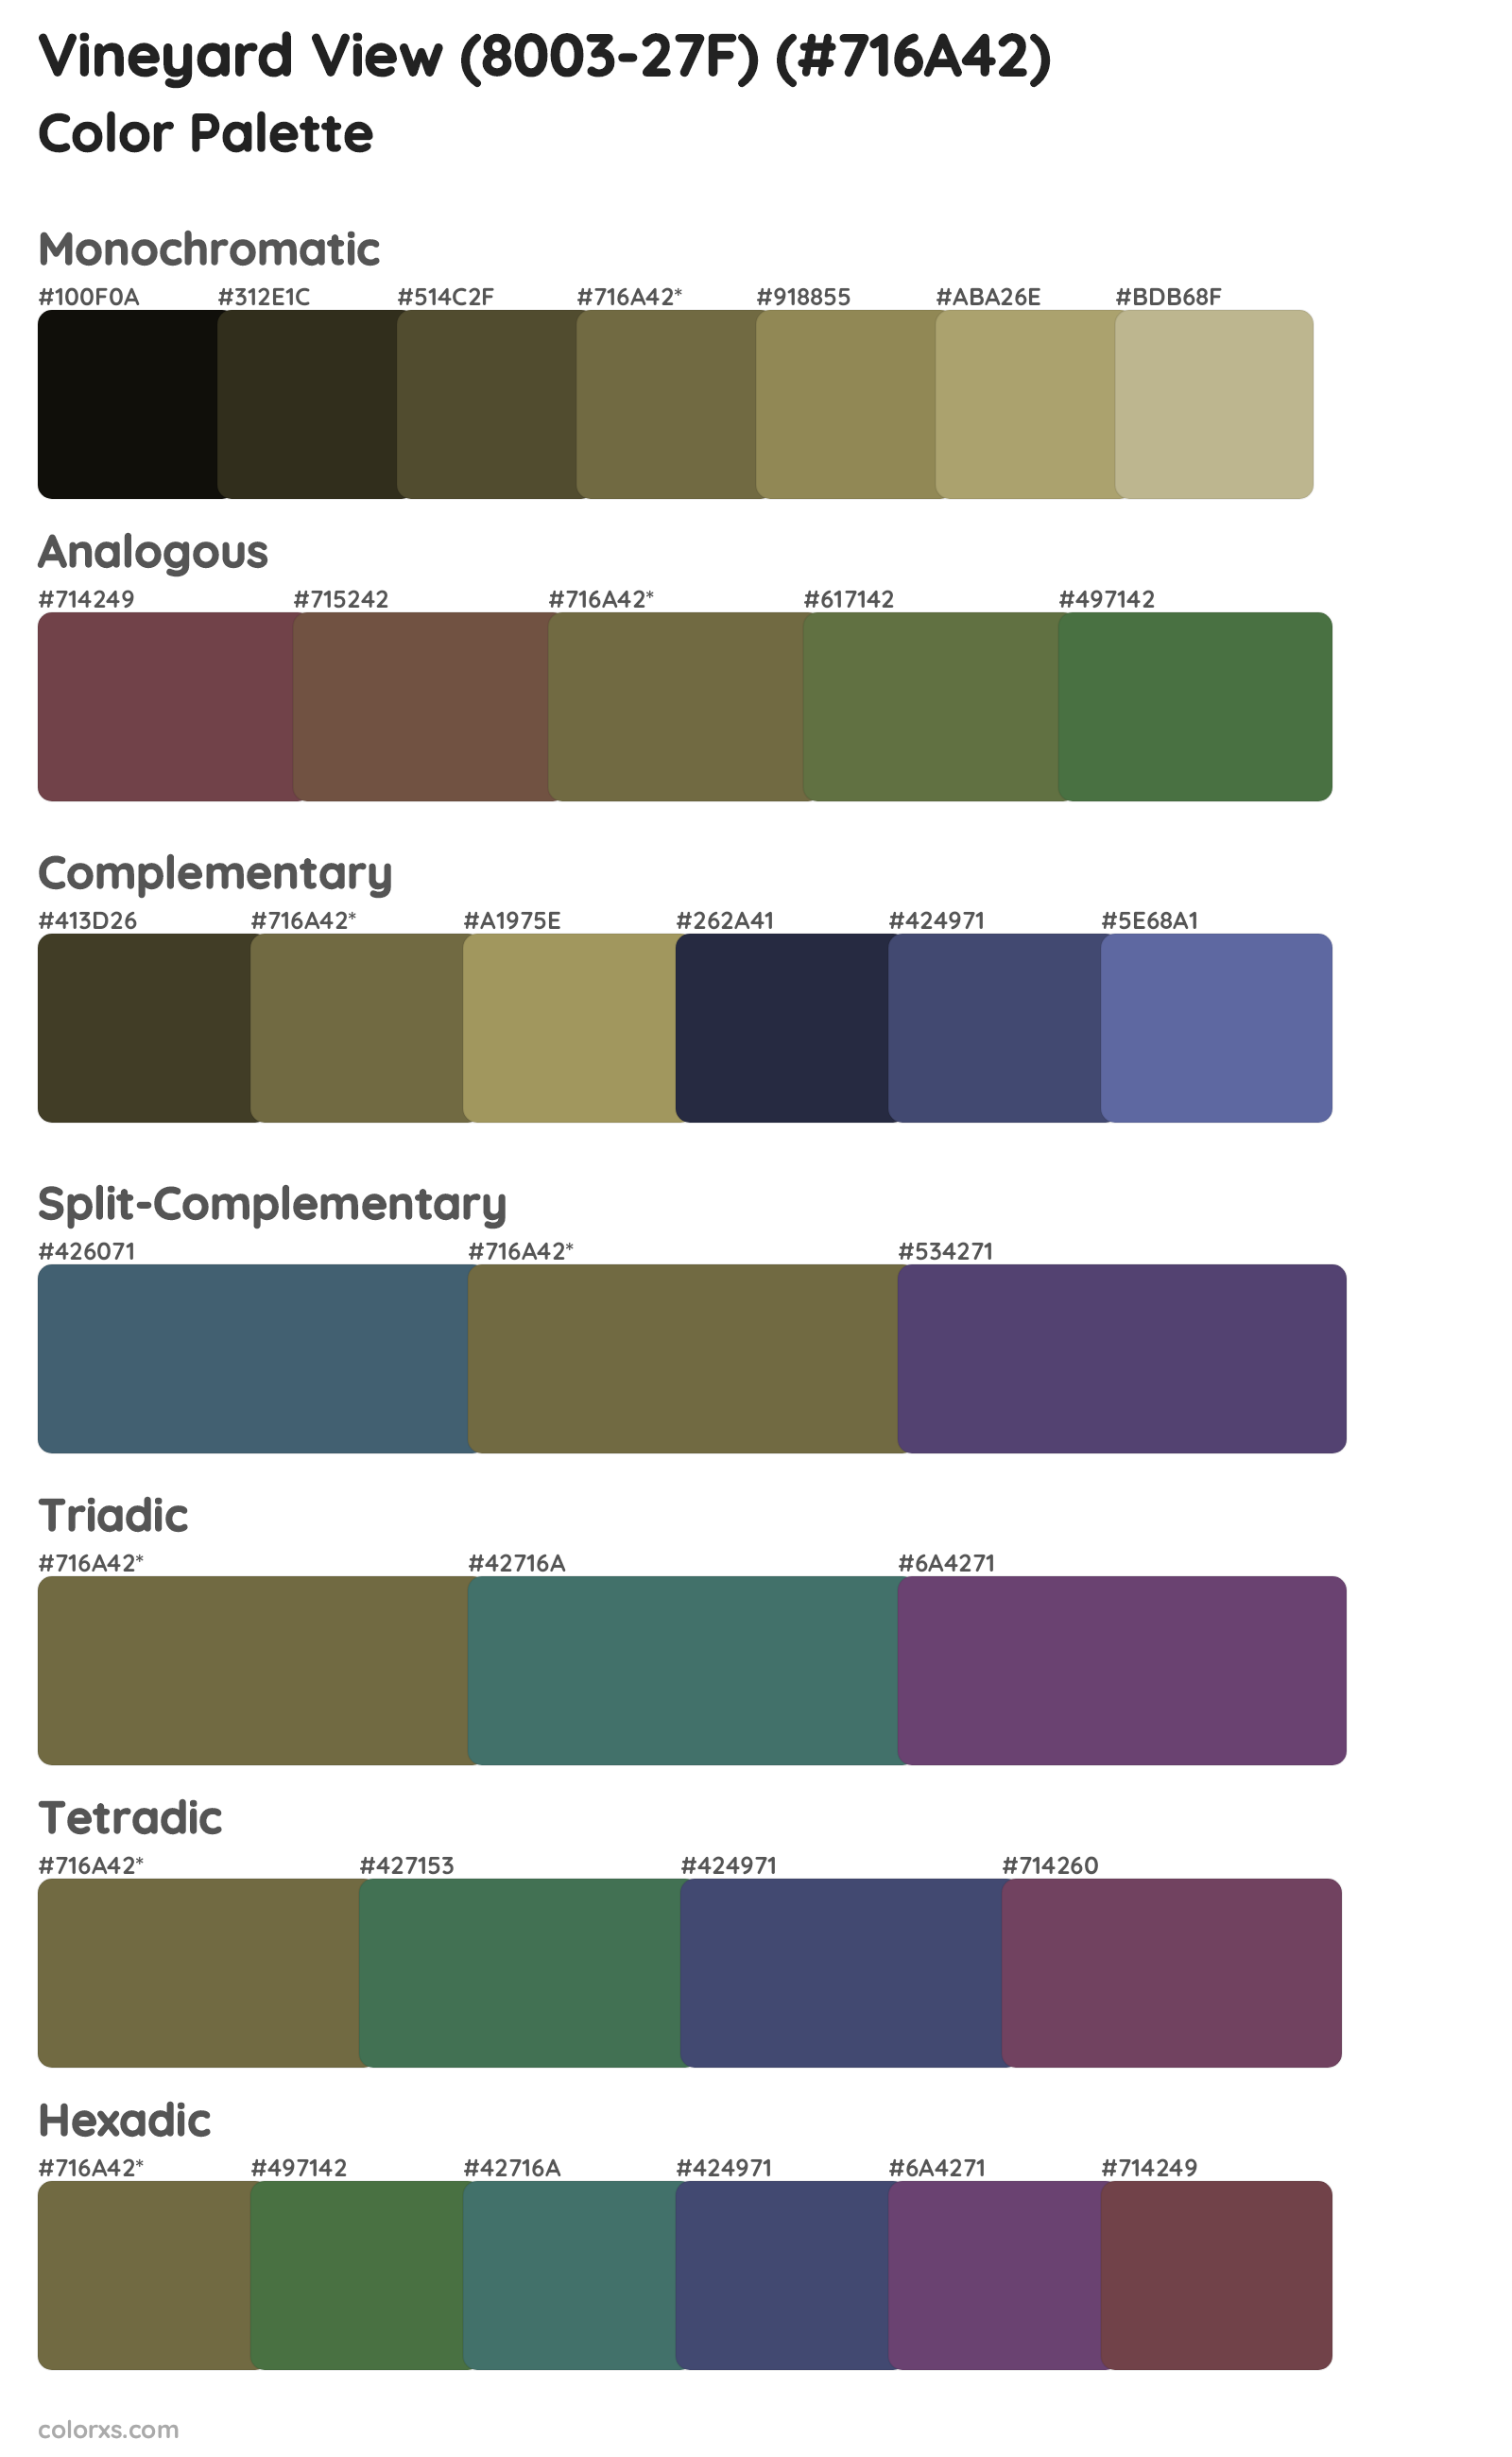 Vineyard View (8003-27F) Color Scheme Palettes